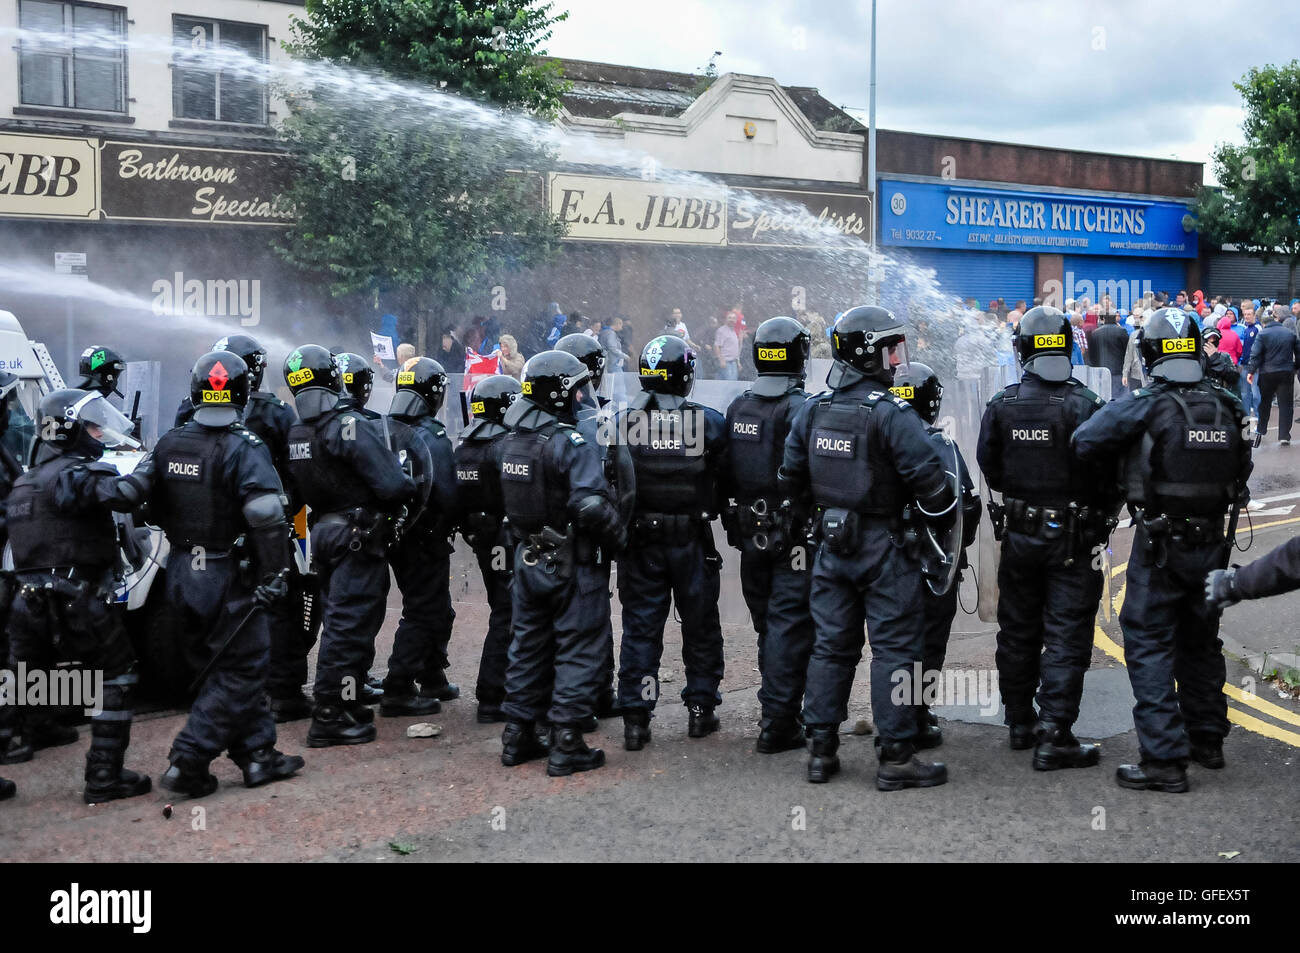 Belfast, Nordirland. 9. August 2013 - Funken eine Anti-Internierung-Parade von Republikanern Unruhen durch Proteste Loyalisten in Belfast Stockfoto